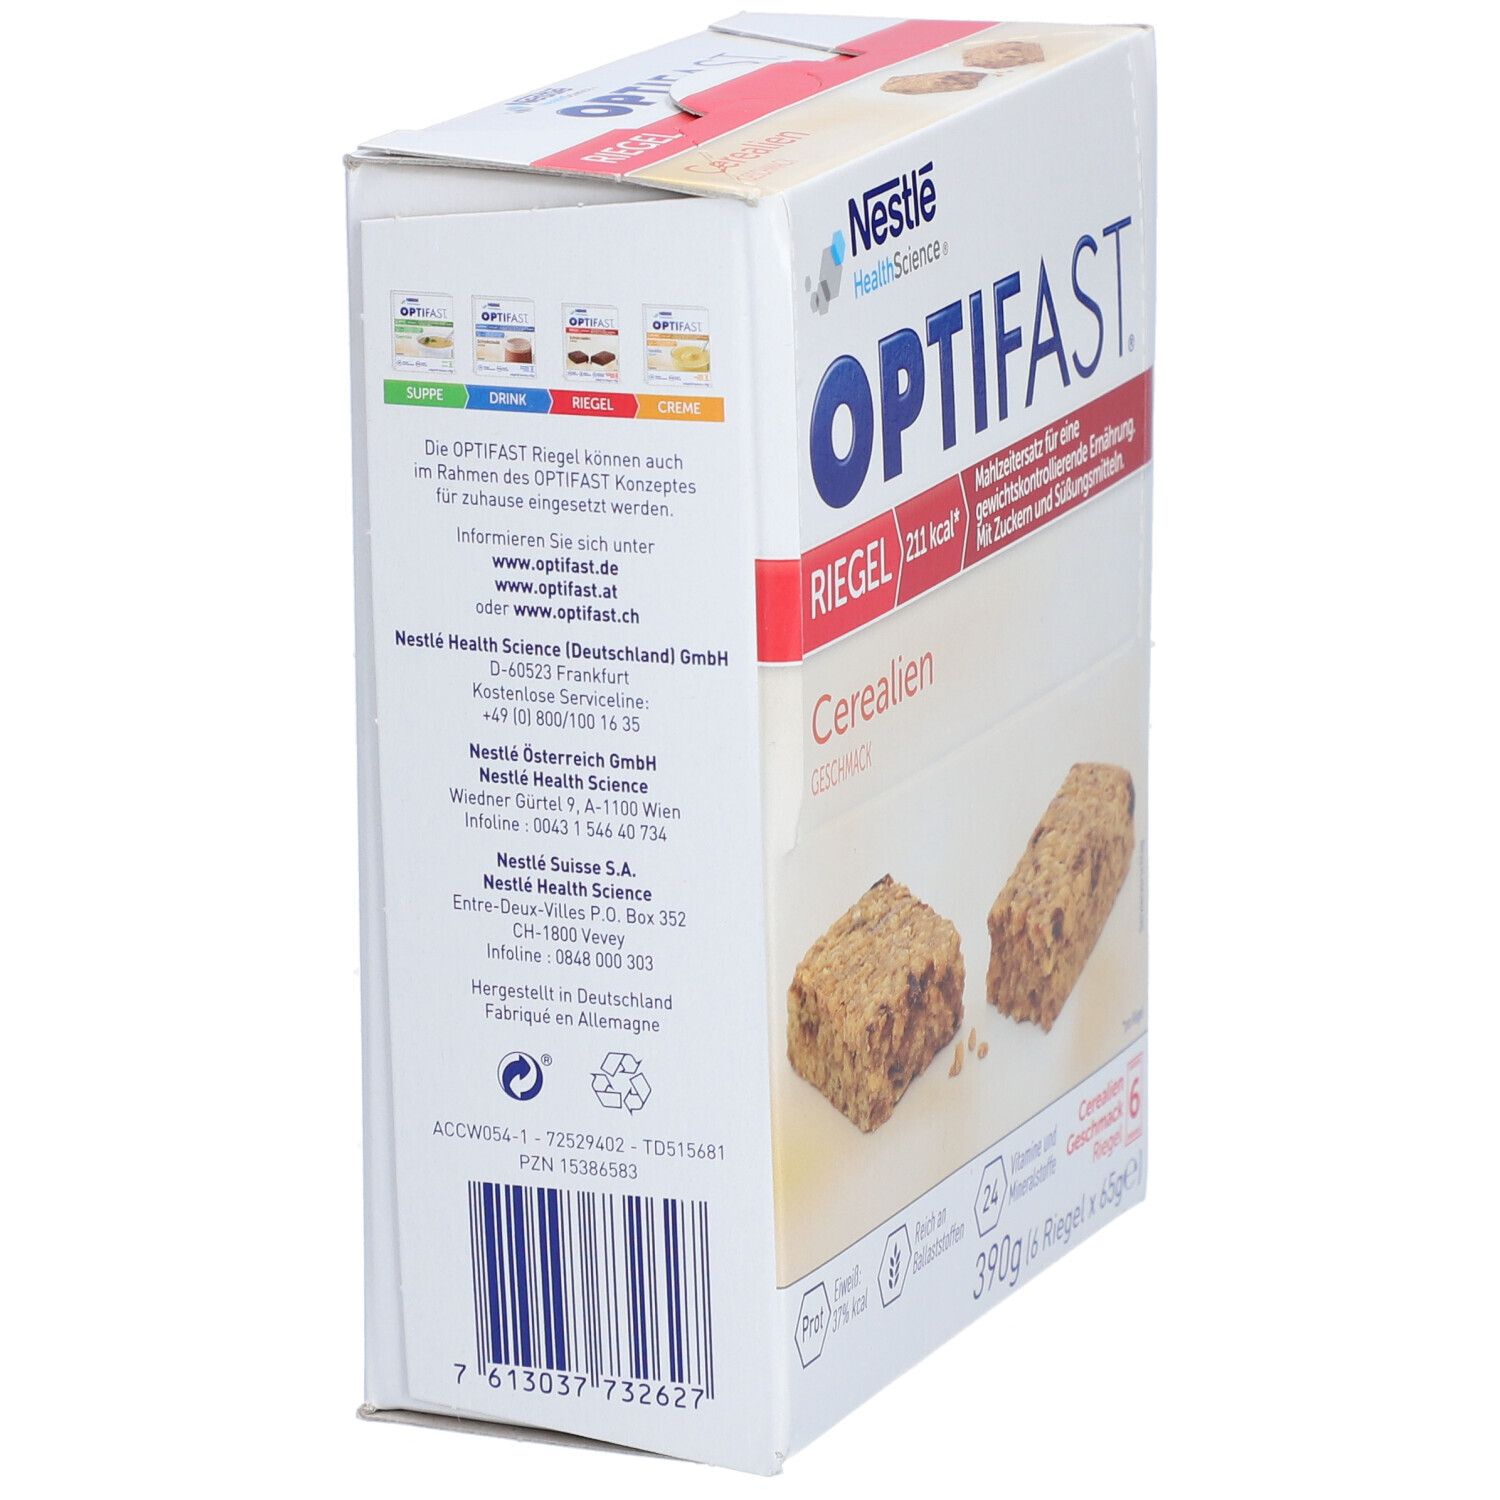  OPTIFAST® Riegel Cerealien